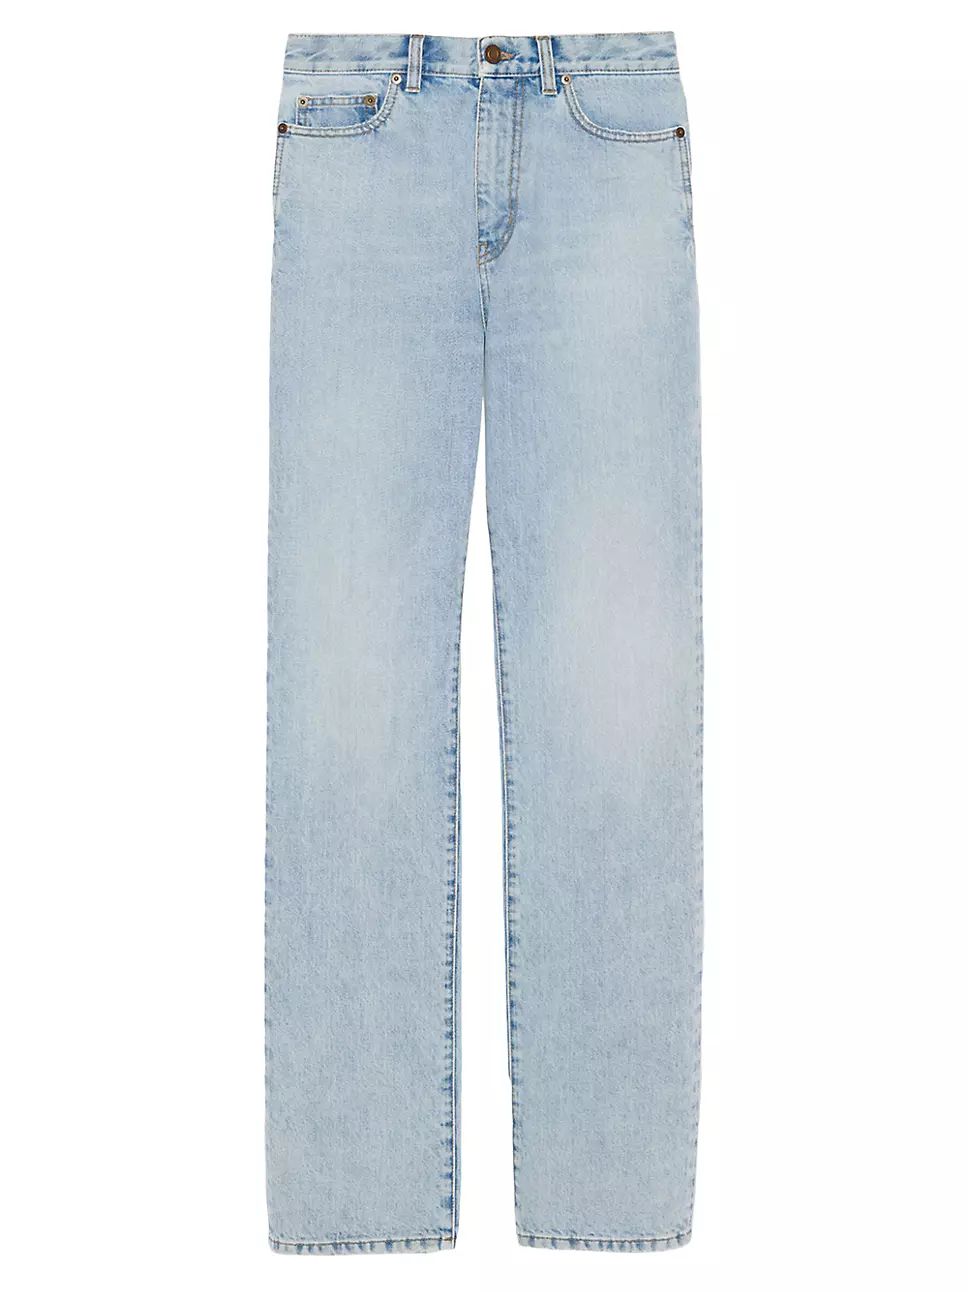 Janice Jeans in Clear Sky Blue Denim | Saks Fifth Avenue